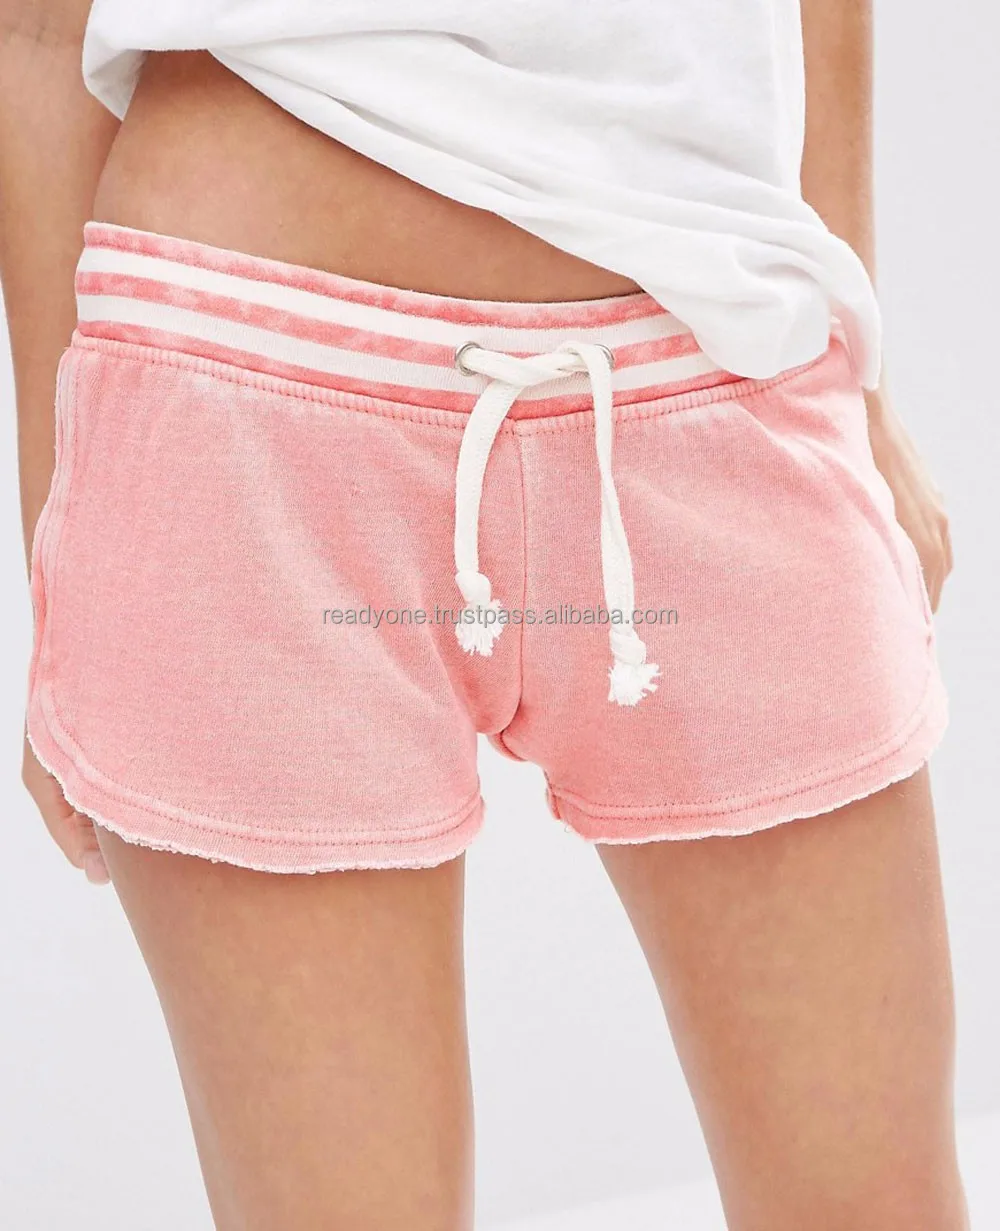 Moshiner Shorts 3D Full Print Poliéster Spandex Custom Made Calças de Fitness Esportes Das Mulheres Calções